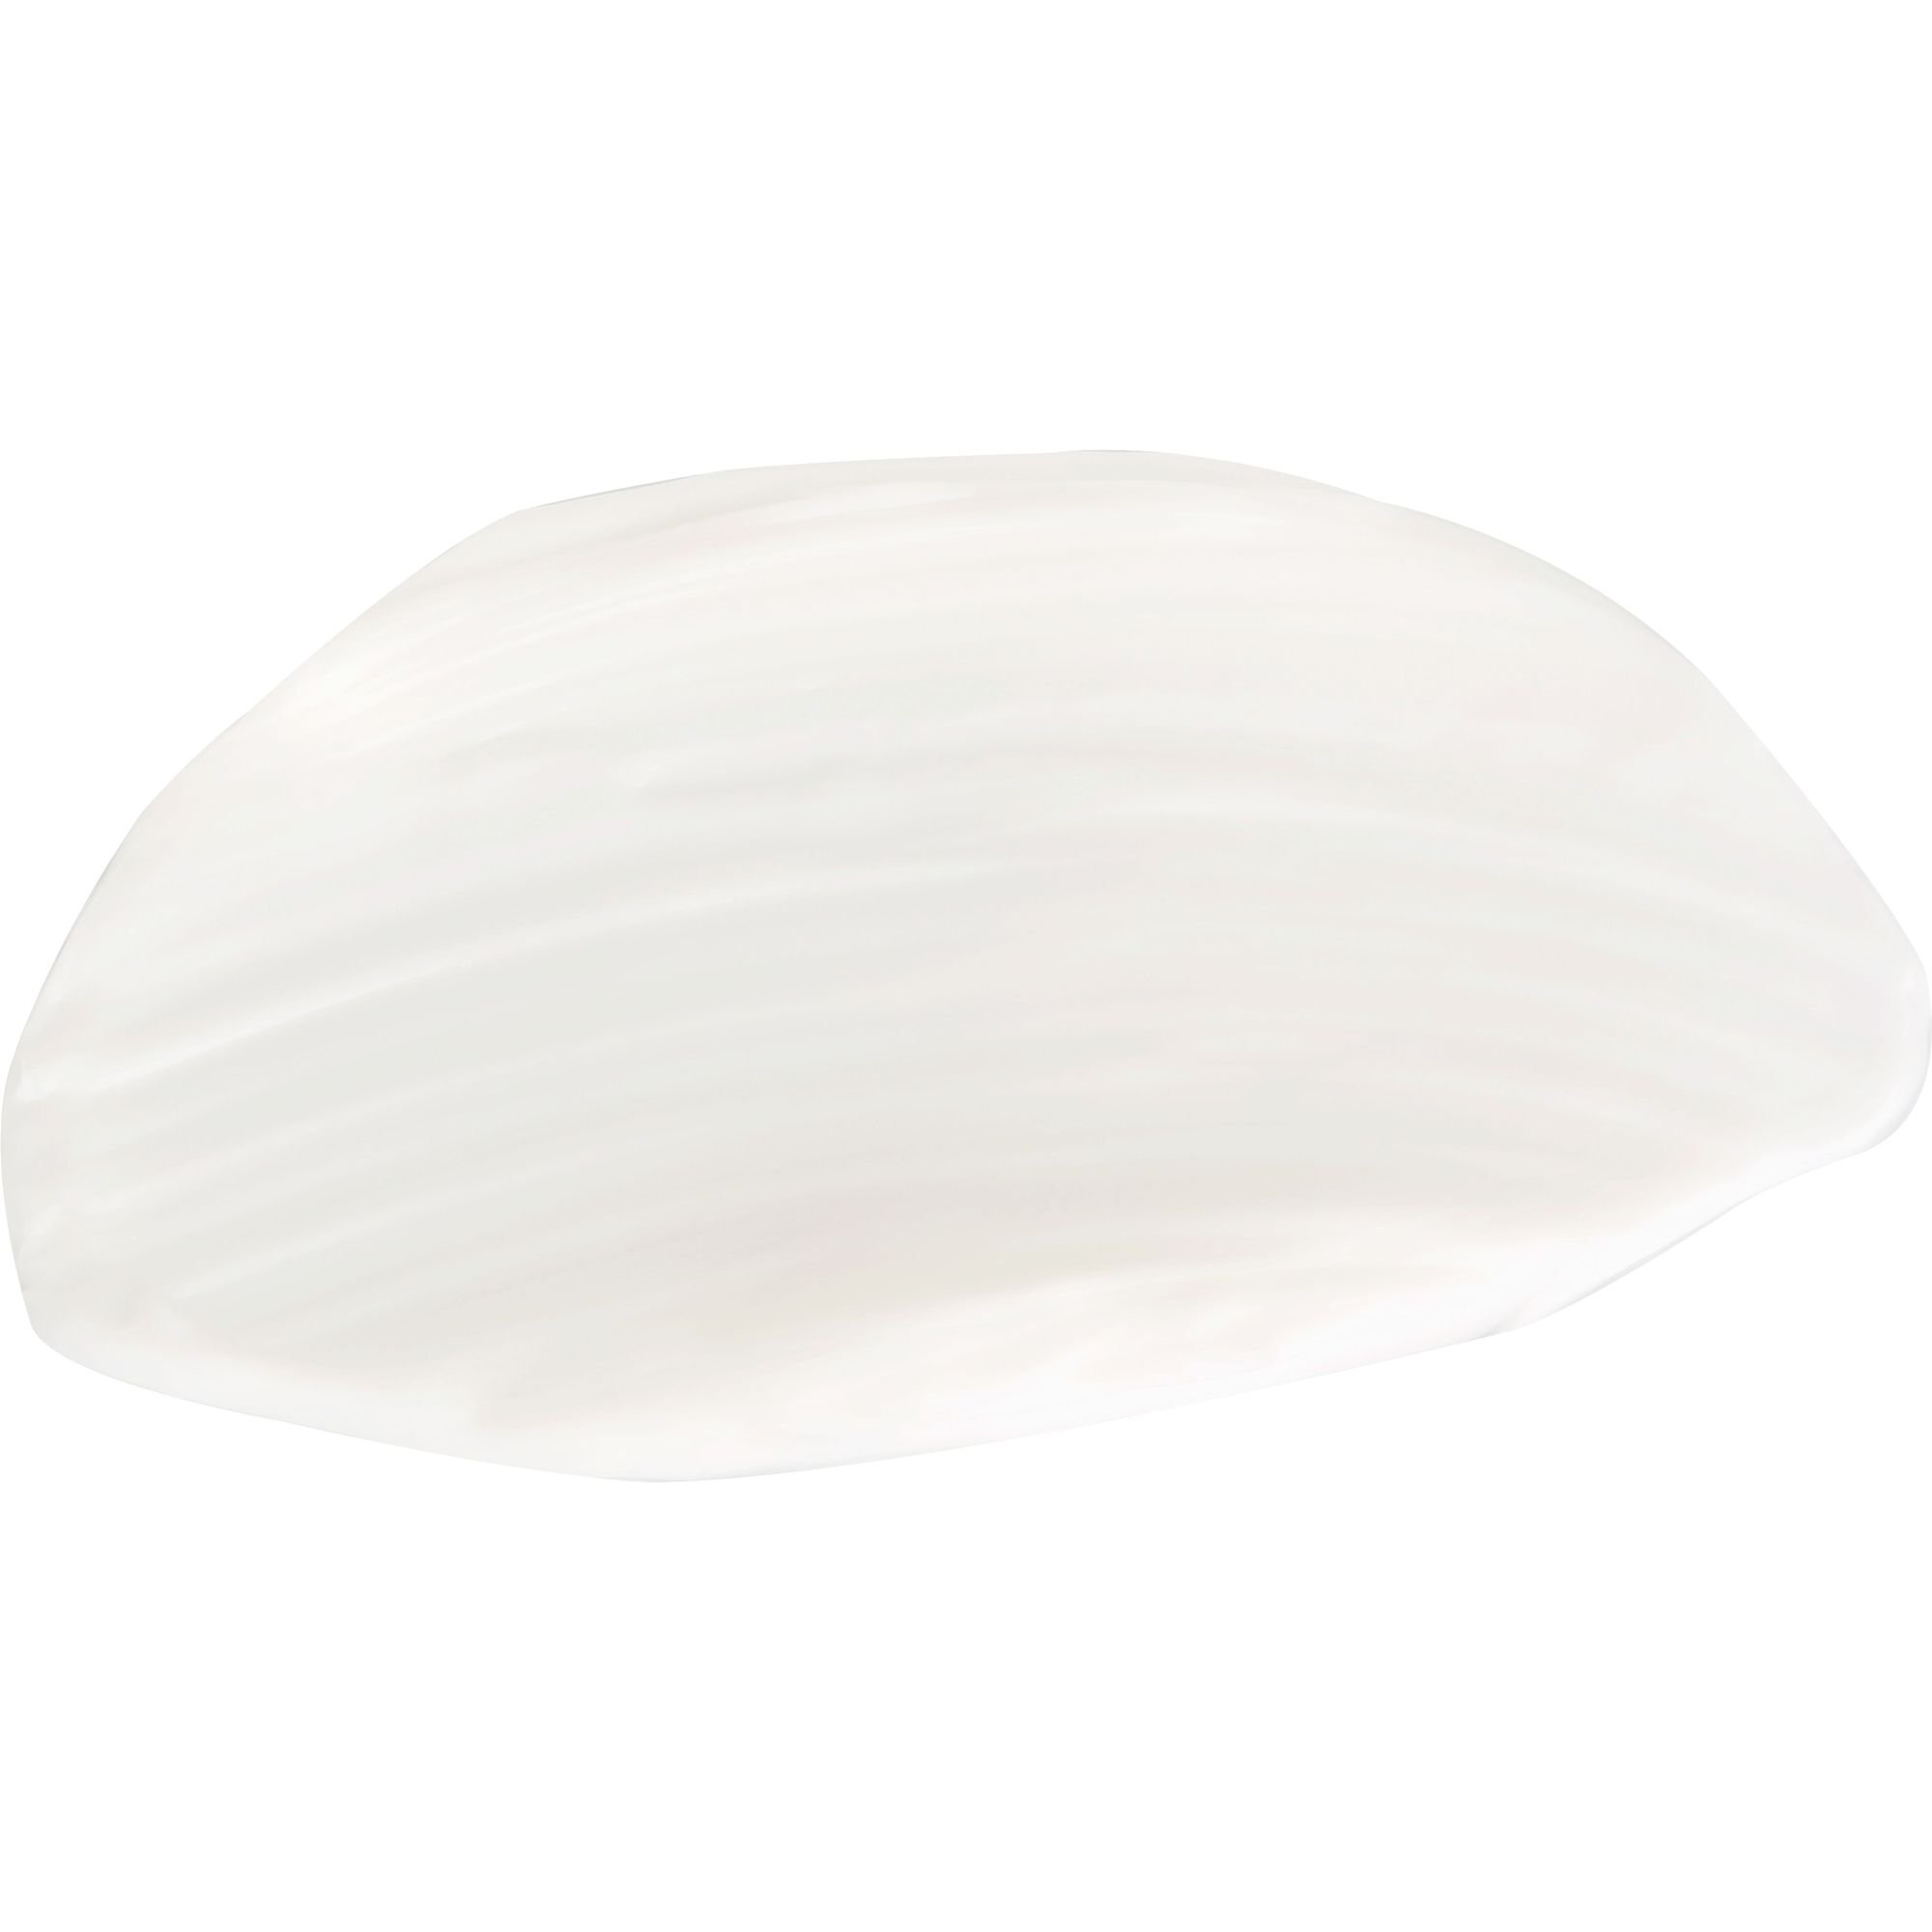 Трансдермальний крем з ліпосомами для нормальної та сухої шкіри Christina Transdermal Cream with Liposomes 60 мл - фото 3